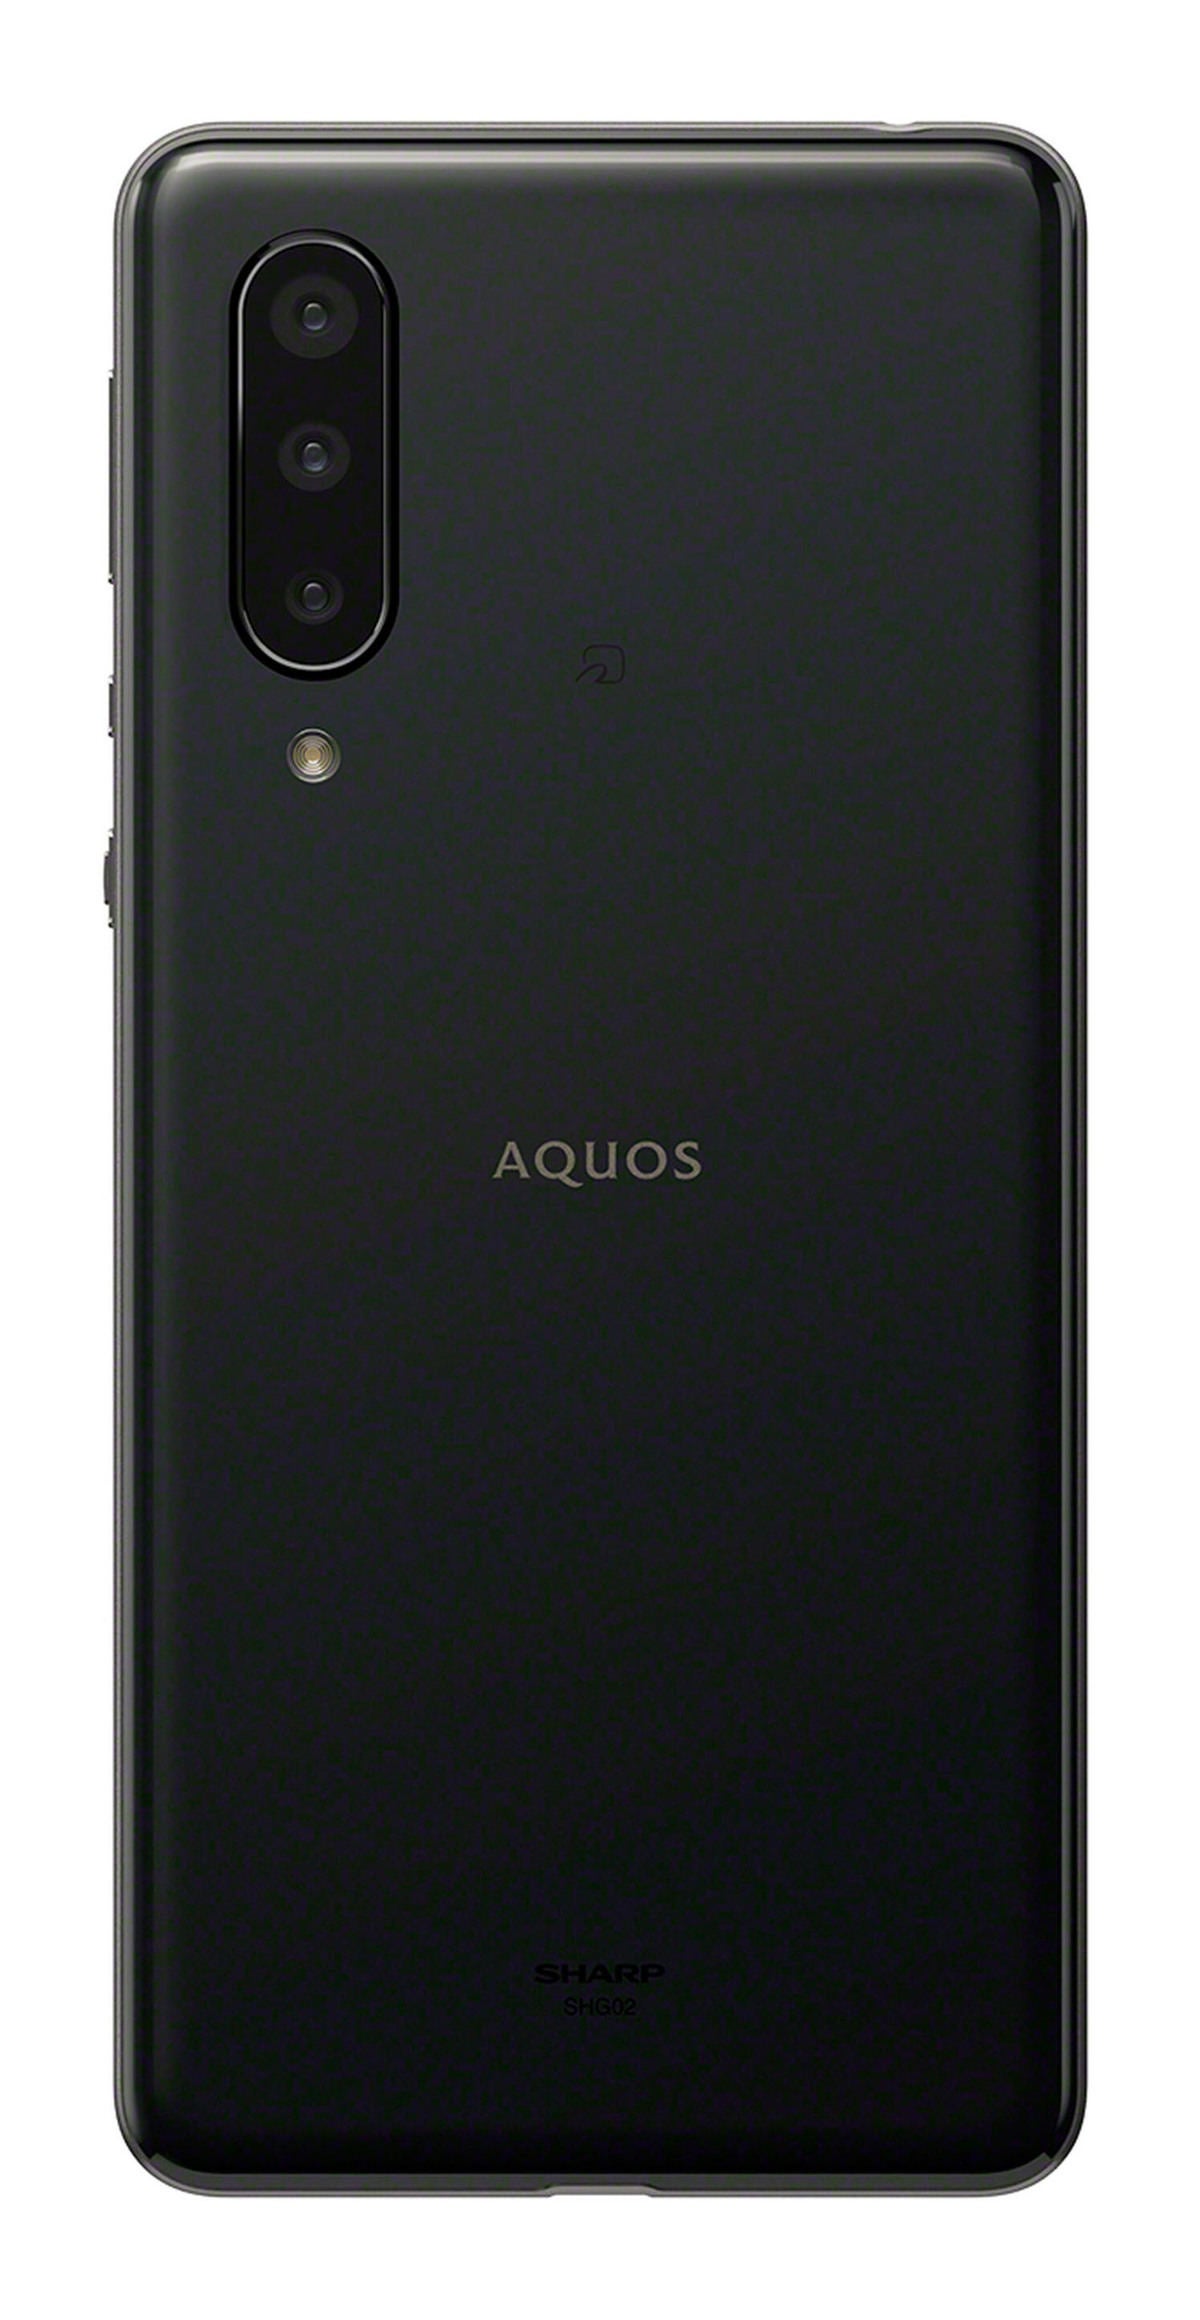 AQUOS zero5G basic DX ブラック 128 GB au r62